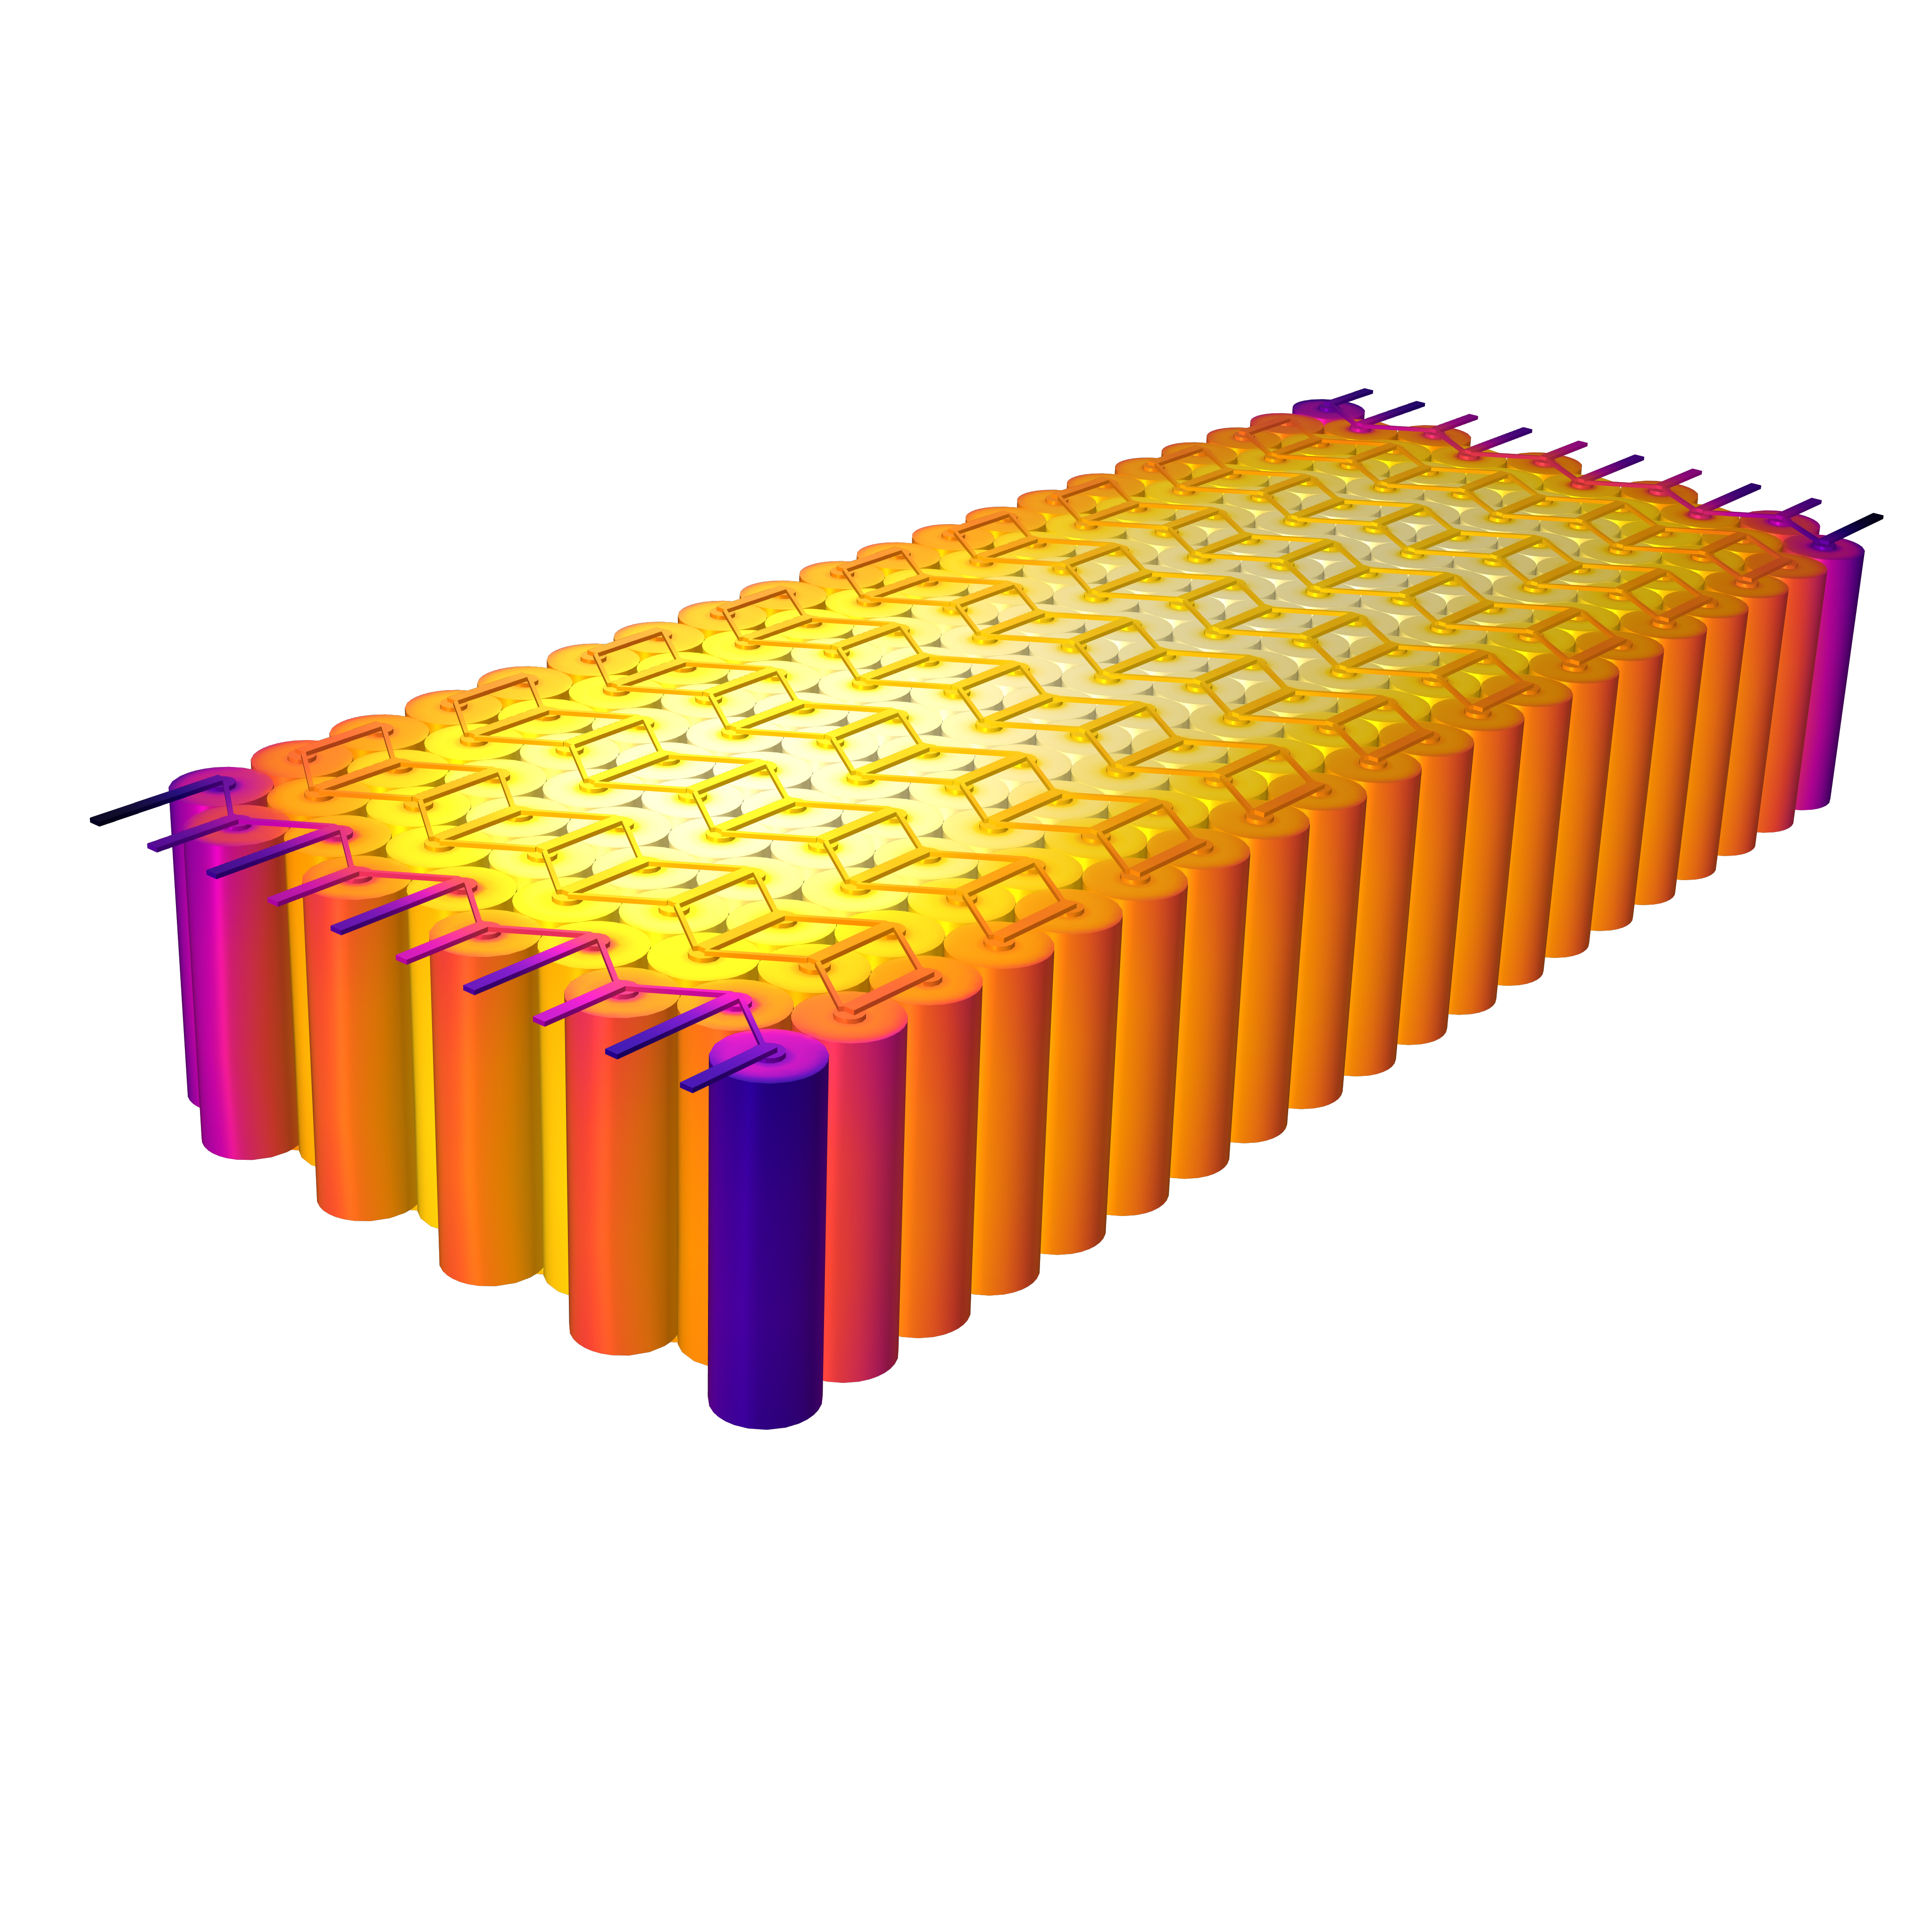 电池组型号，由200个电池组成，在热摄像头颜色桌上可视化。